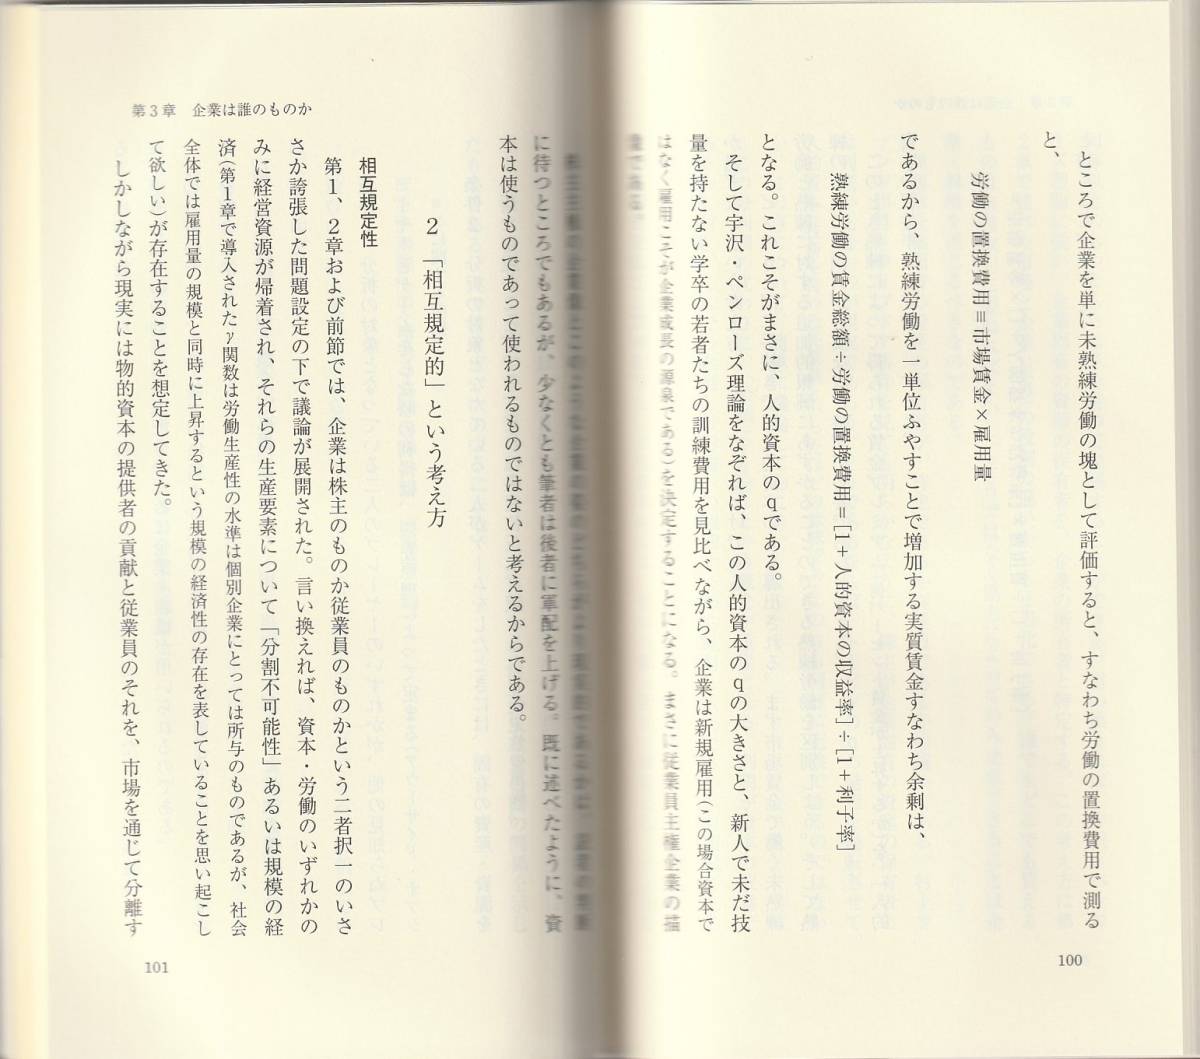  большой ... эпоха Heisei не .. книга@ качество . для . финансовый из мысль . новый красный версия Iwanami новая книга Iwanami книжный магазин первая версия 